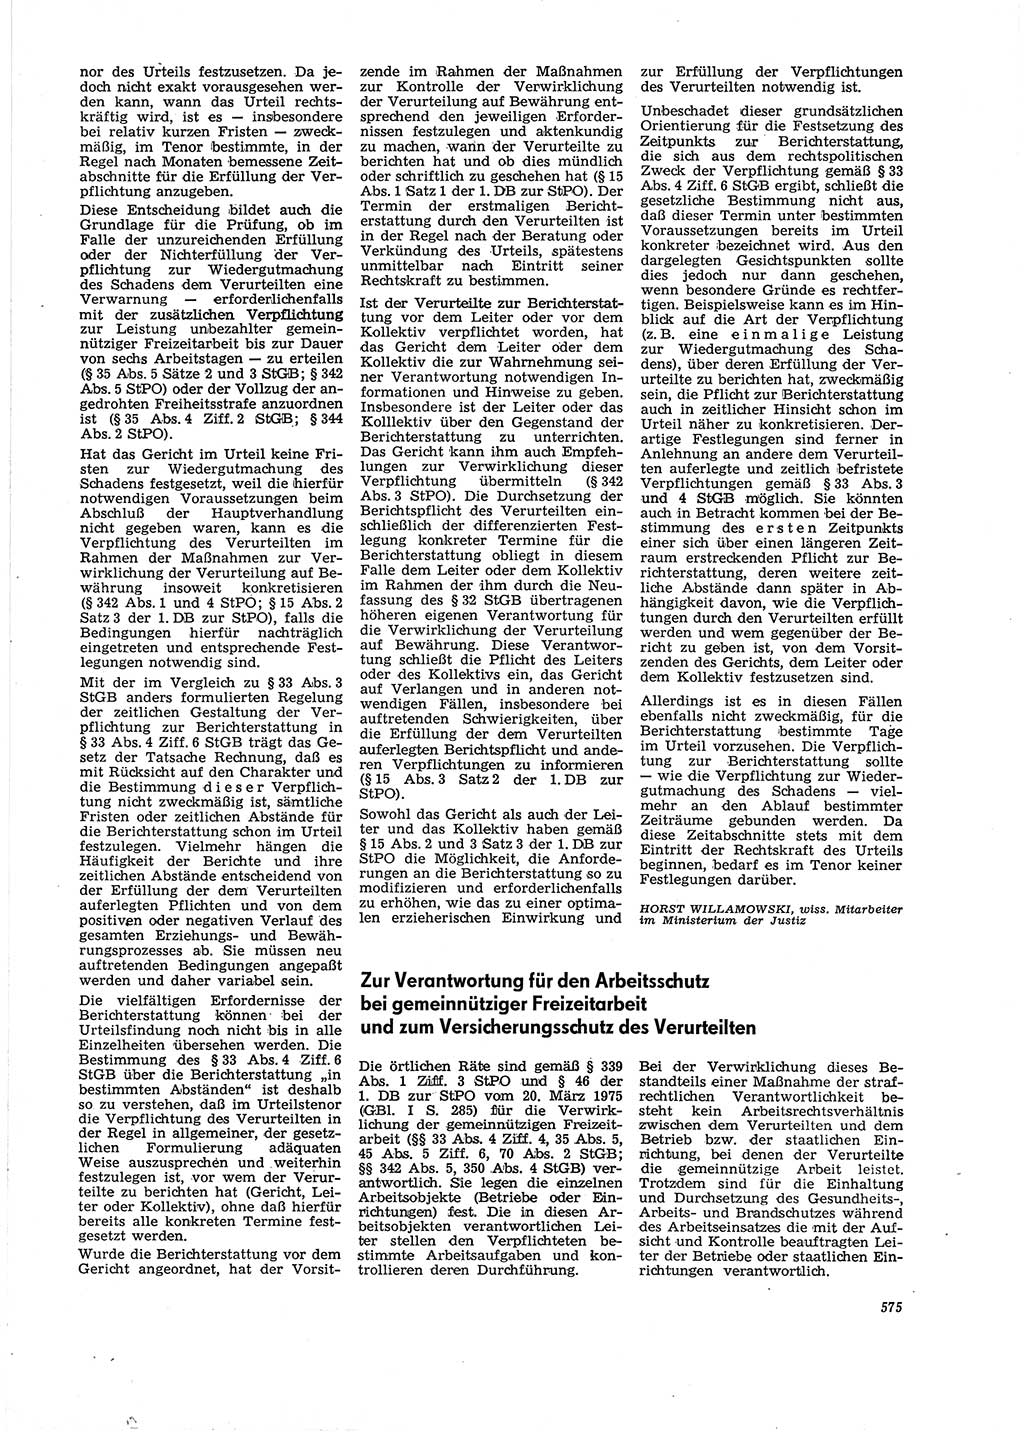 Neue Justiz (NJ), Zeitschrift für Recht und Rechtswissenschaft [Deutsche Demokratische Republik (DDR)], 29. Jahrgang 1975, Seite 575 (NJ DDR 1975, S. 575)